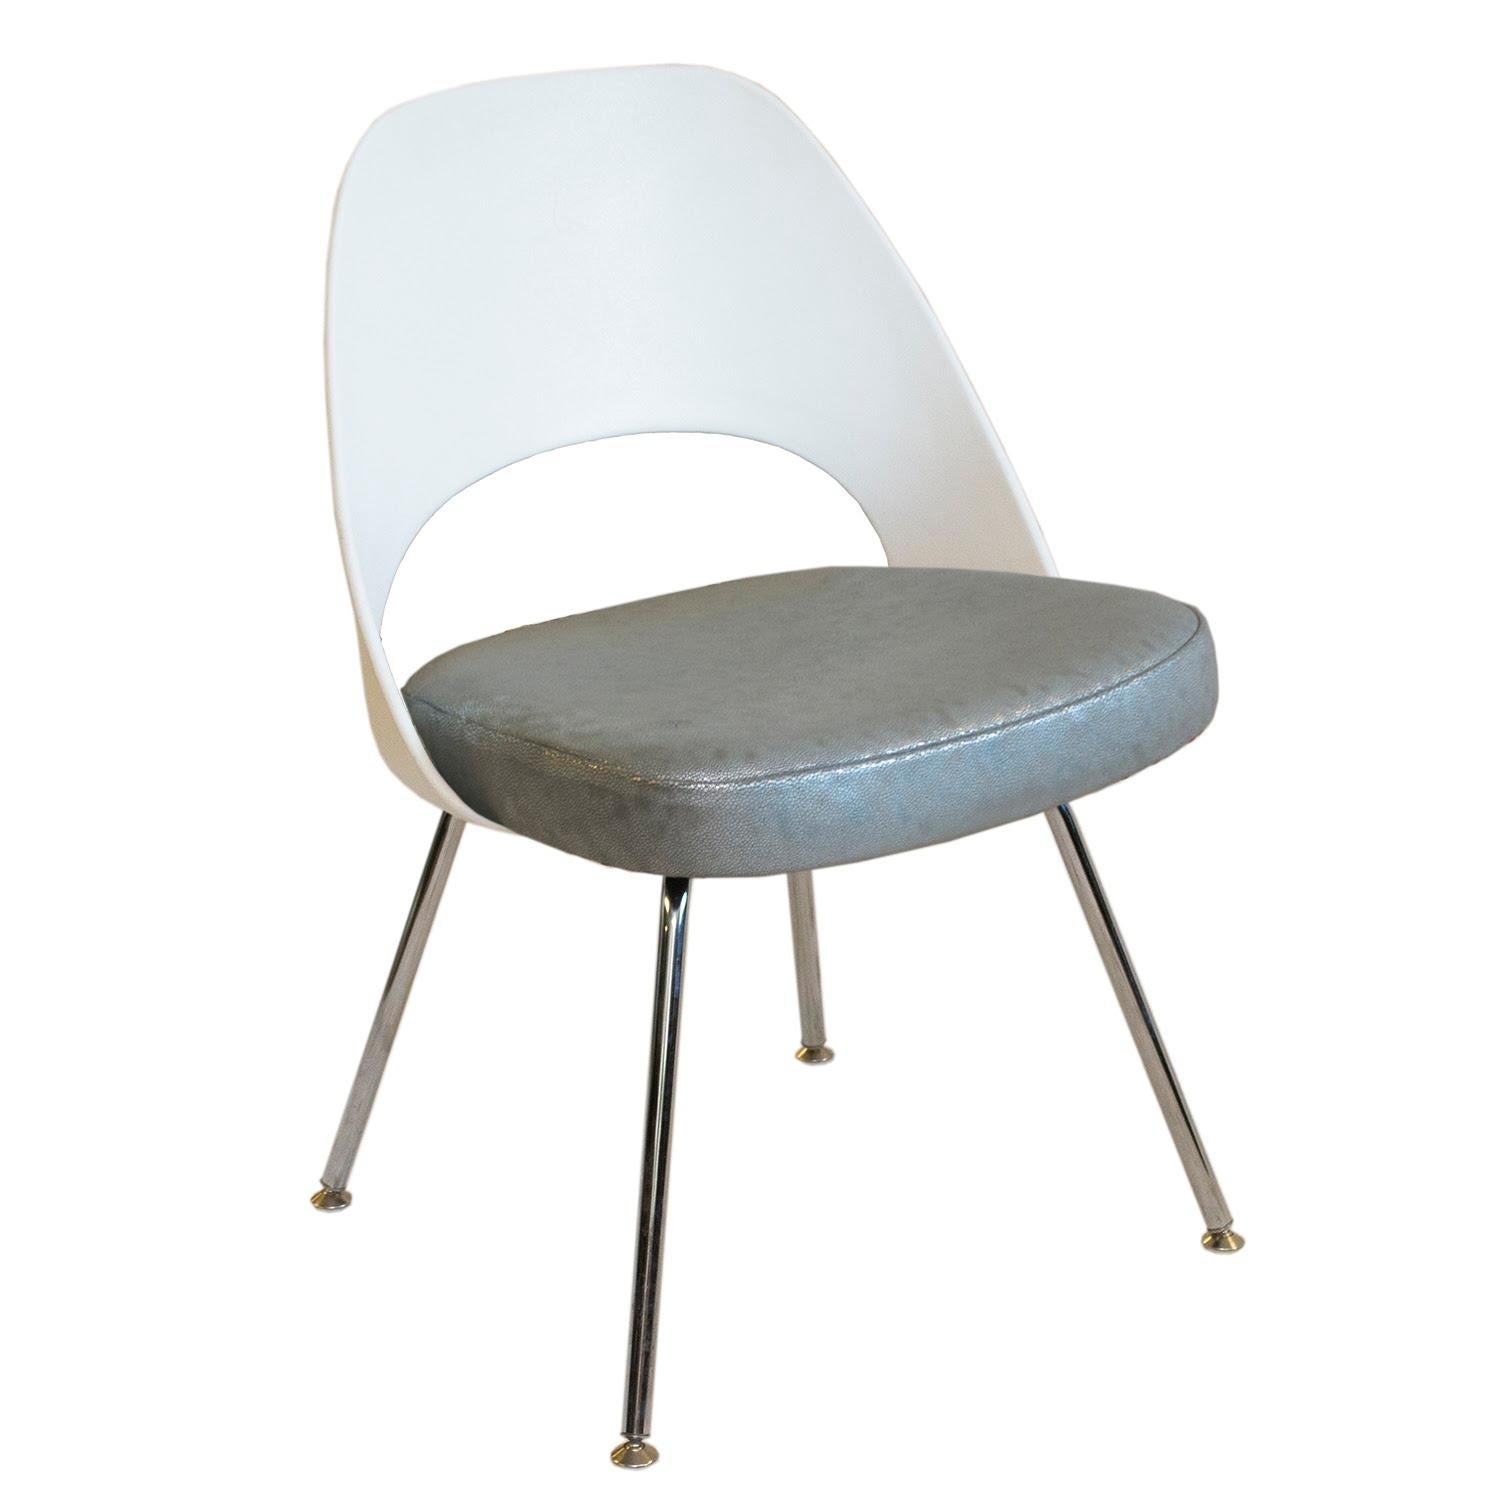 Nicht von dieser Welt! Dieser Beistellstuhl mit weißer Kunststofflehne von Eero Saarinen für Knoll wurde vor kurzem mit einem unglaublich geschmeidigen silbernen Perlenleder neu bezogen. Dieser Stuhl würde sich hervorragend in einem Kinderzimmer mit